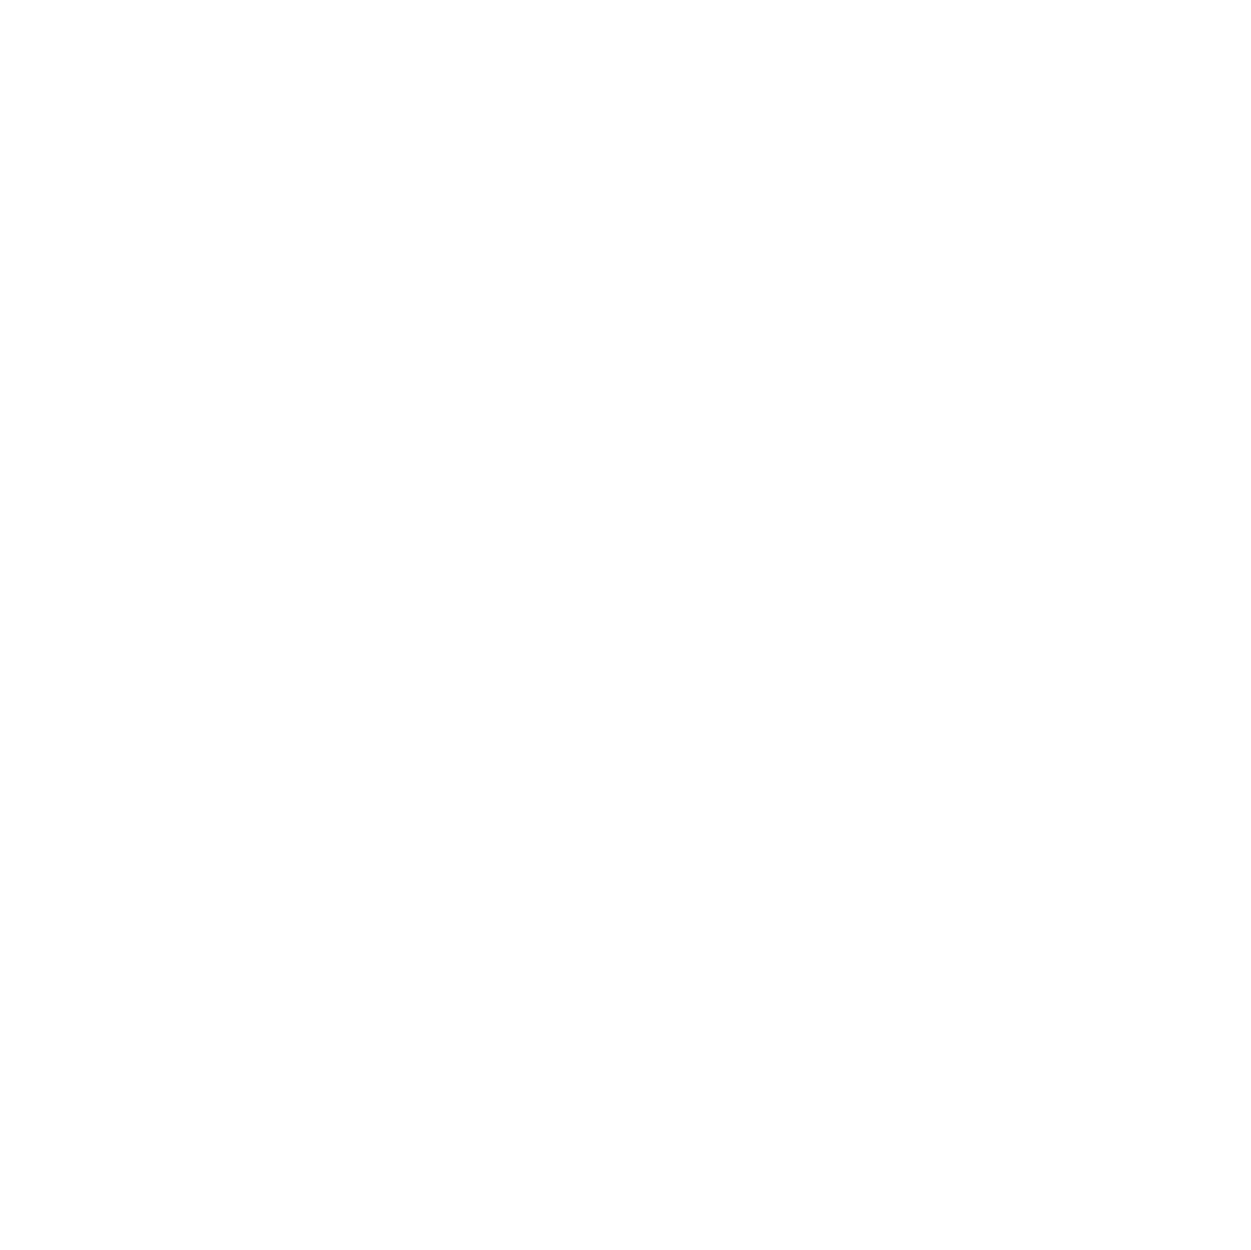 Daffern Law Firm